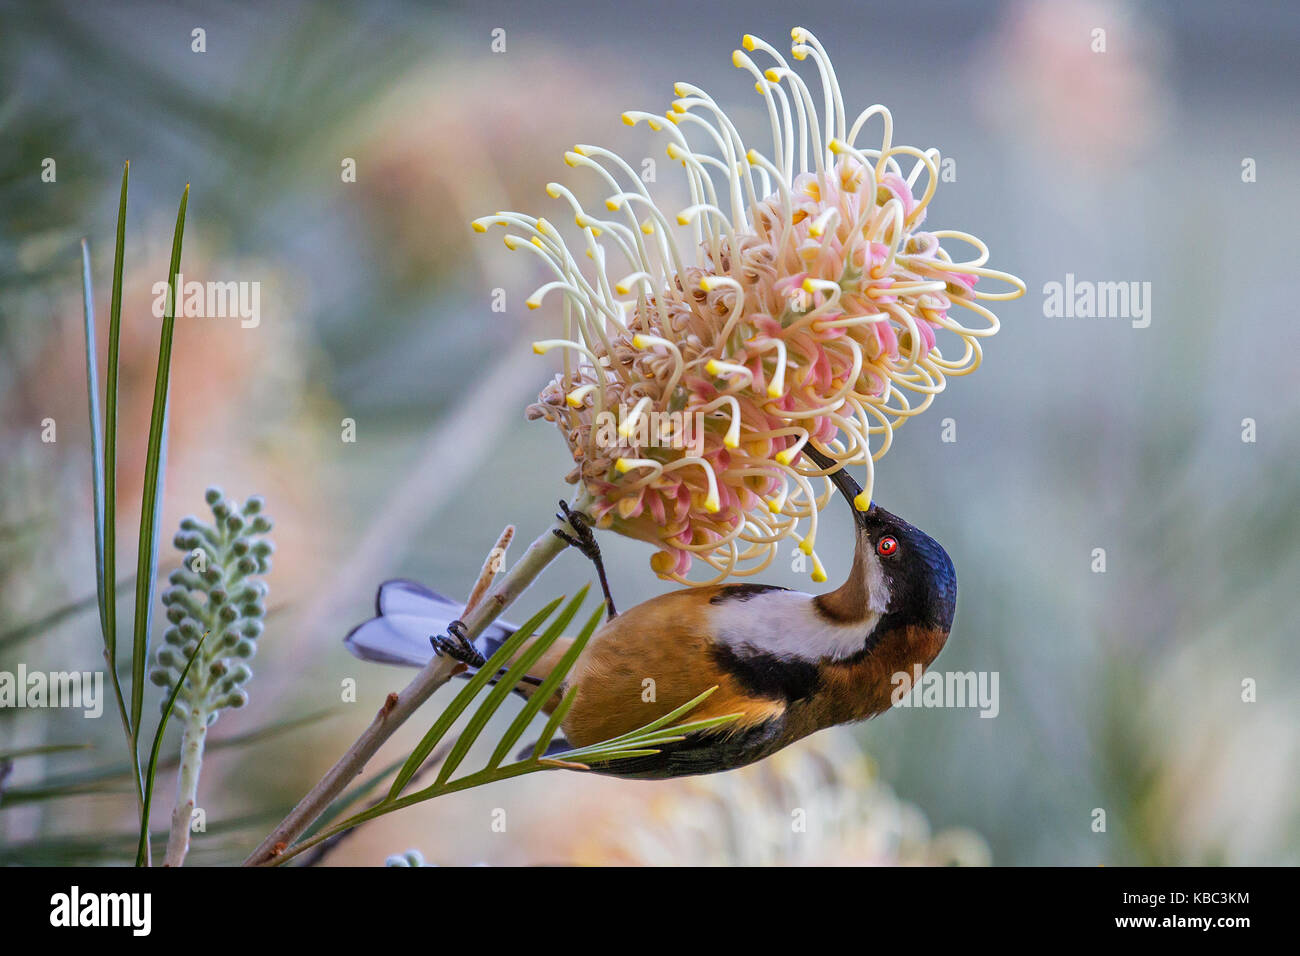 Spinebill orientale d'oiseaux exotiques se nourrissant de nectar de grevillea méliphage Banque D'Images